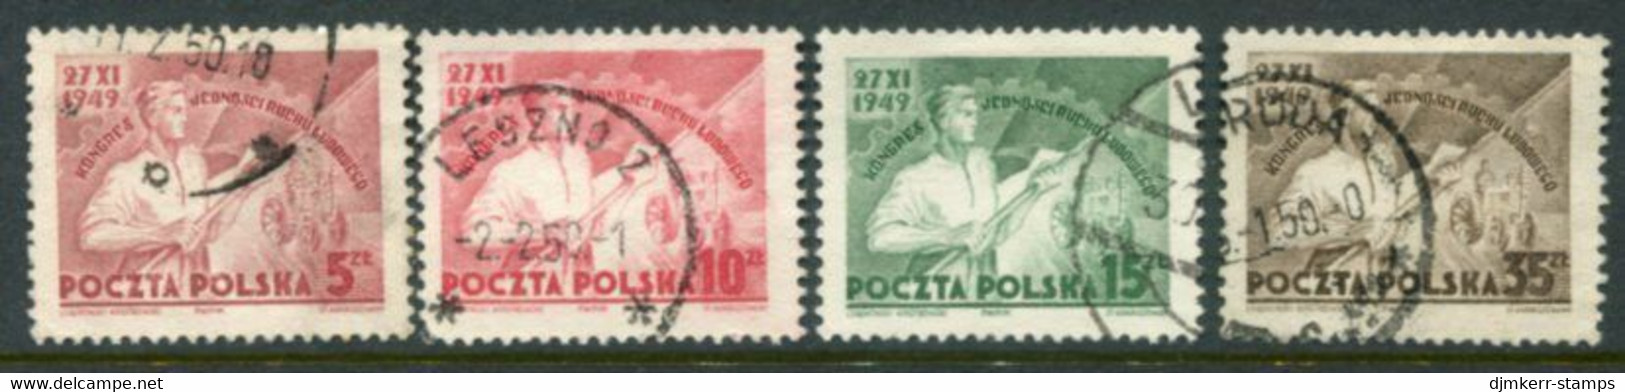 POLAND 1949  Peasant Movement Congress. Used.  Michel 539-42 - Oblitérés